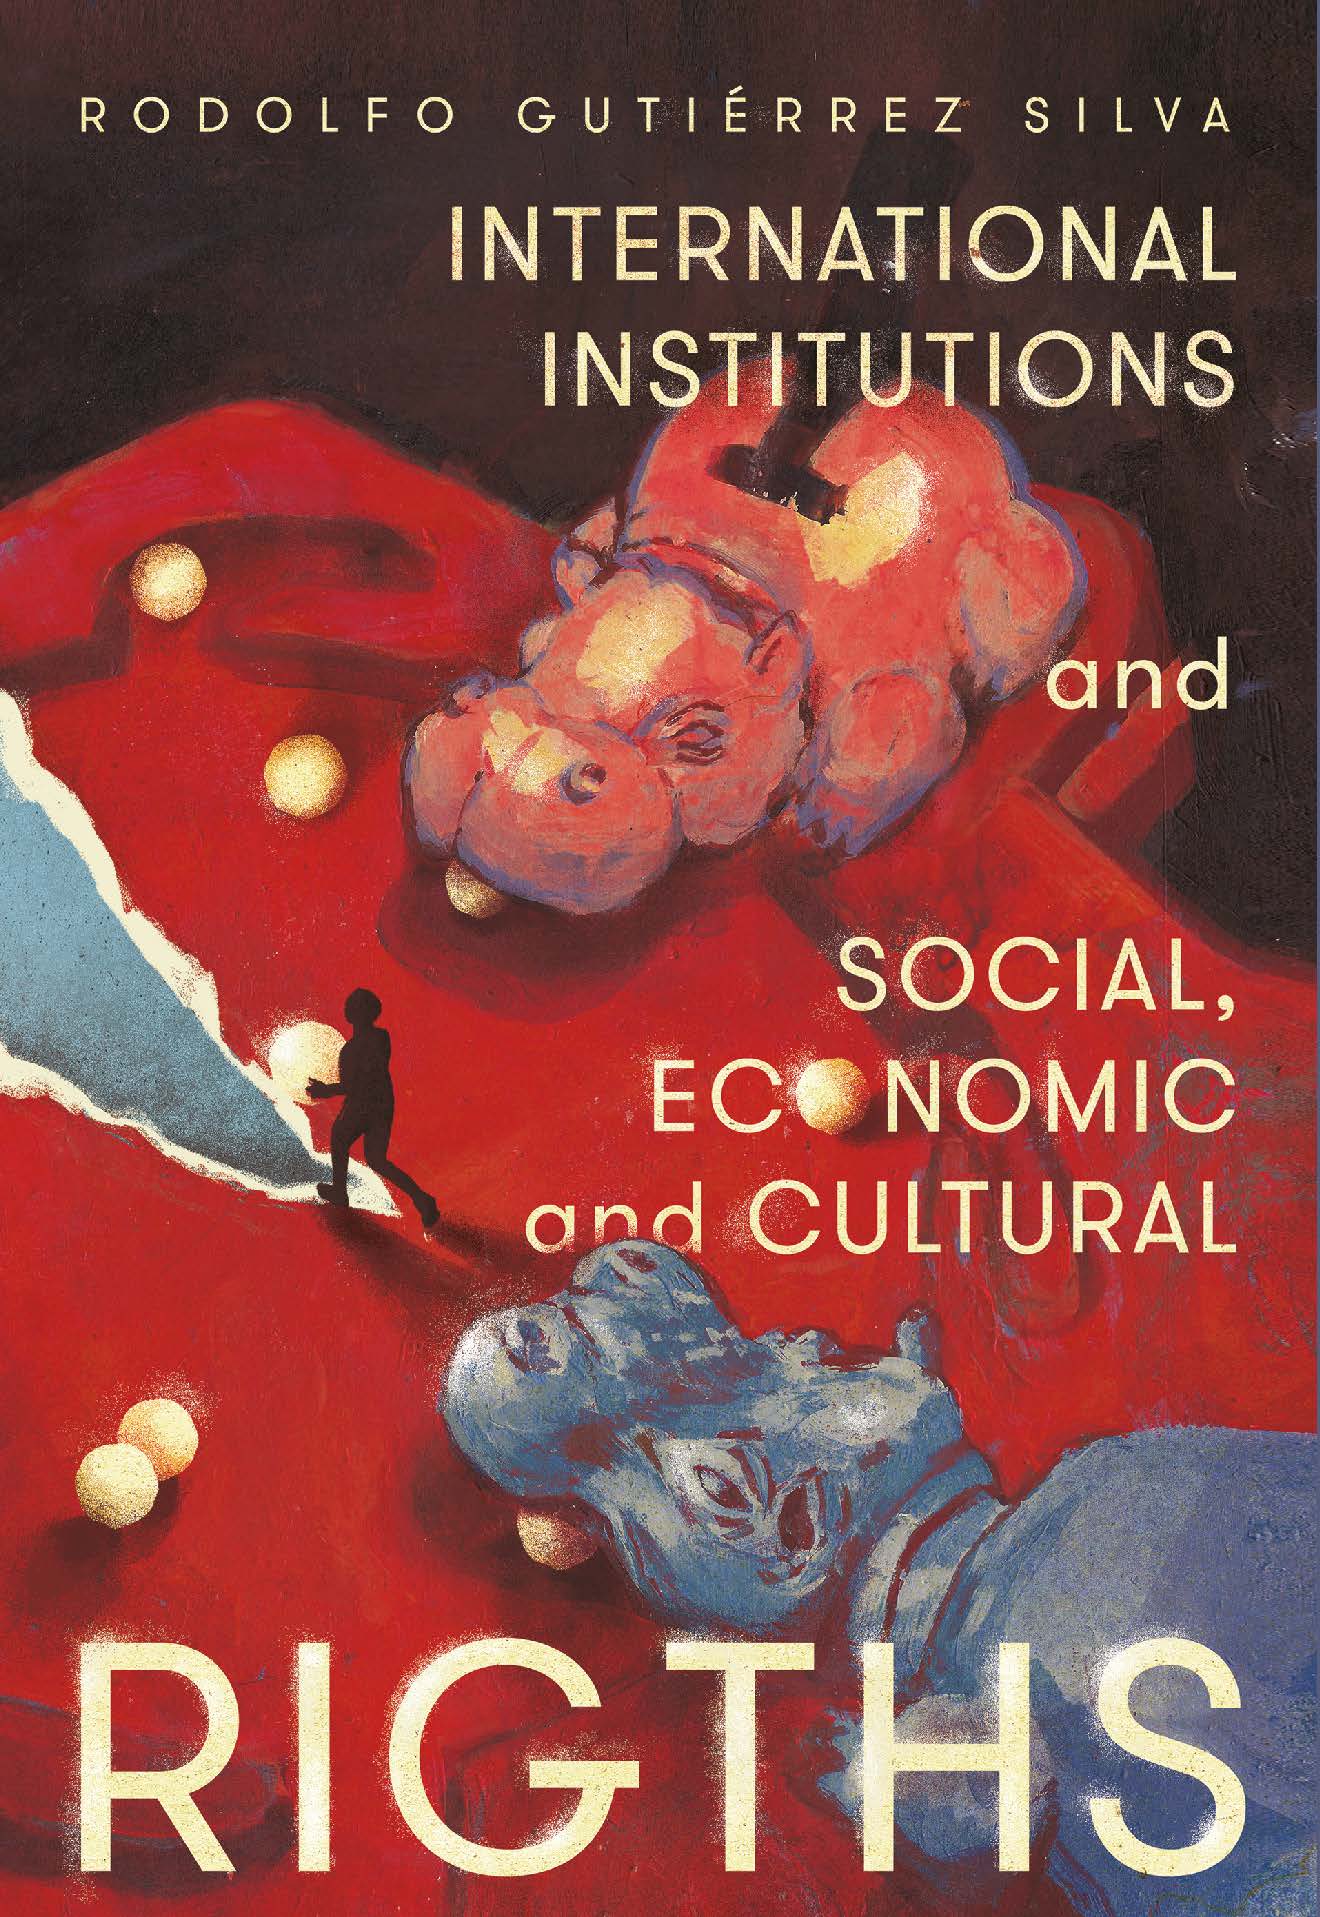 Portada del libro International institucions and social, economic, and cultural rights